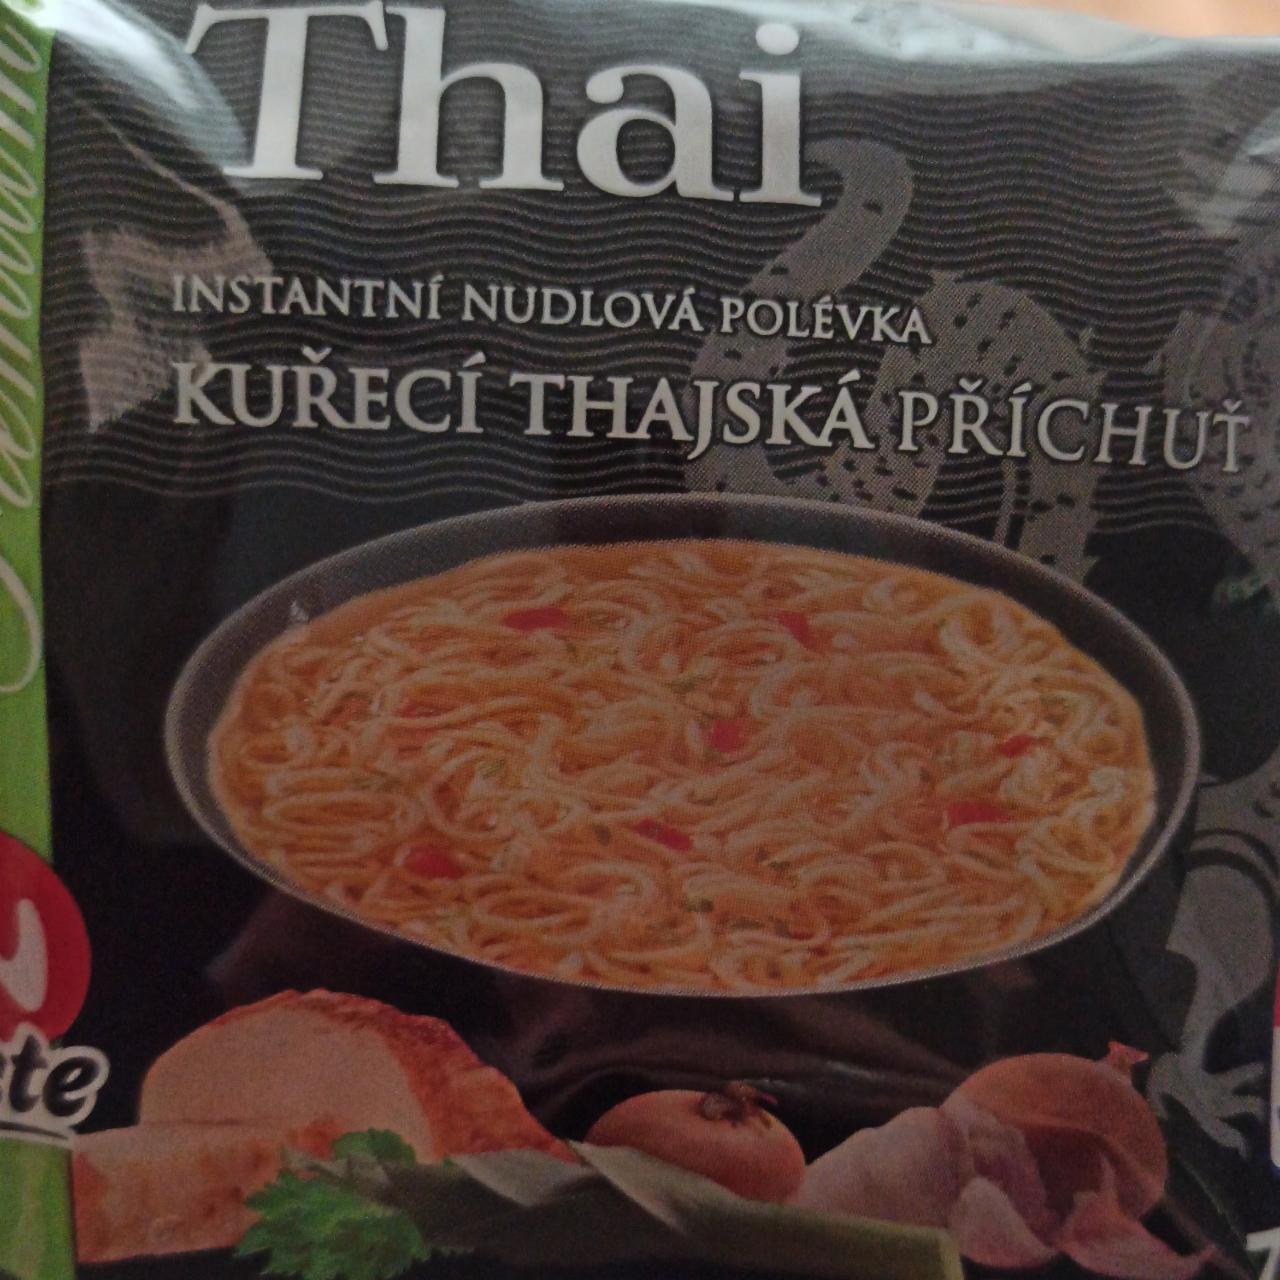 Fotografie - Instantní nudlová polévka s kuřecí thajskou příchutí InTaste